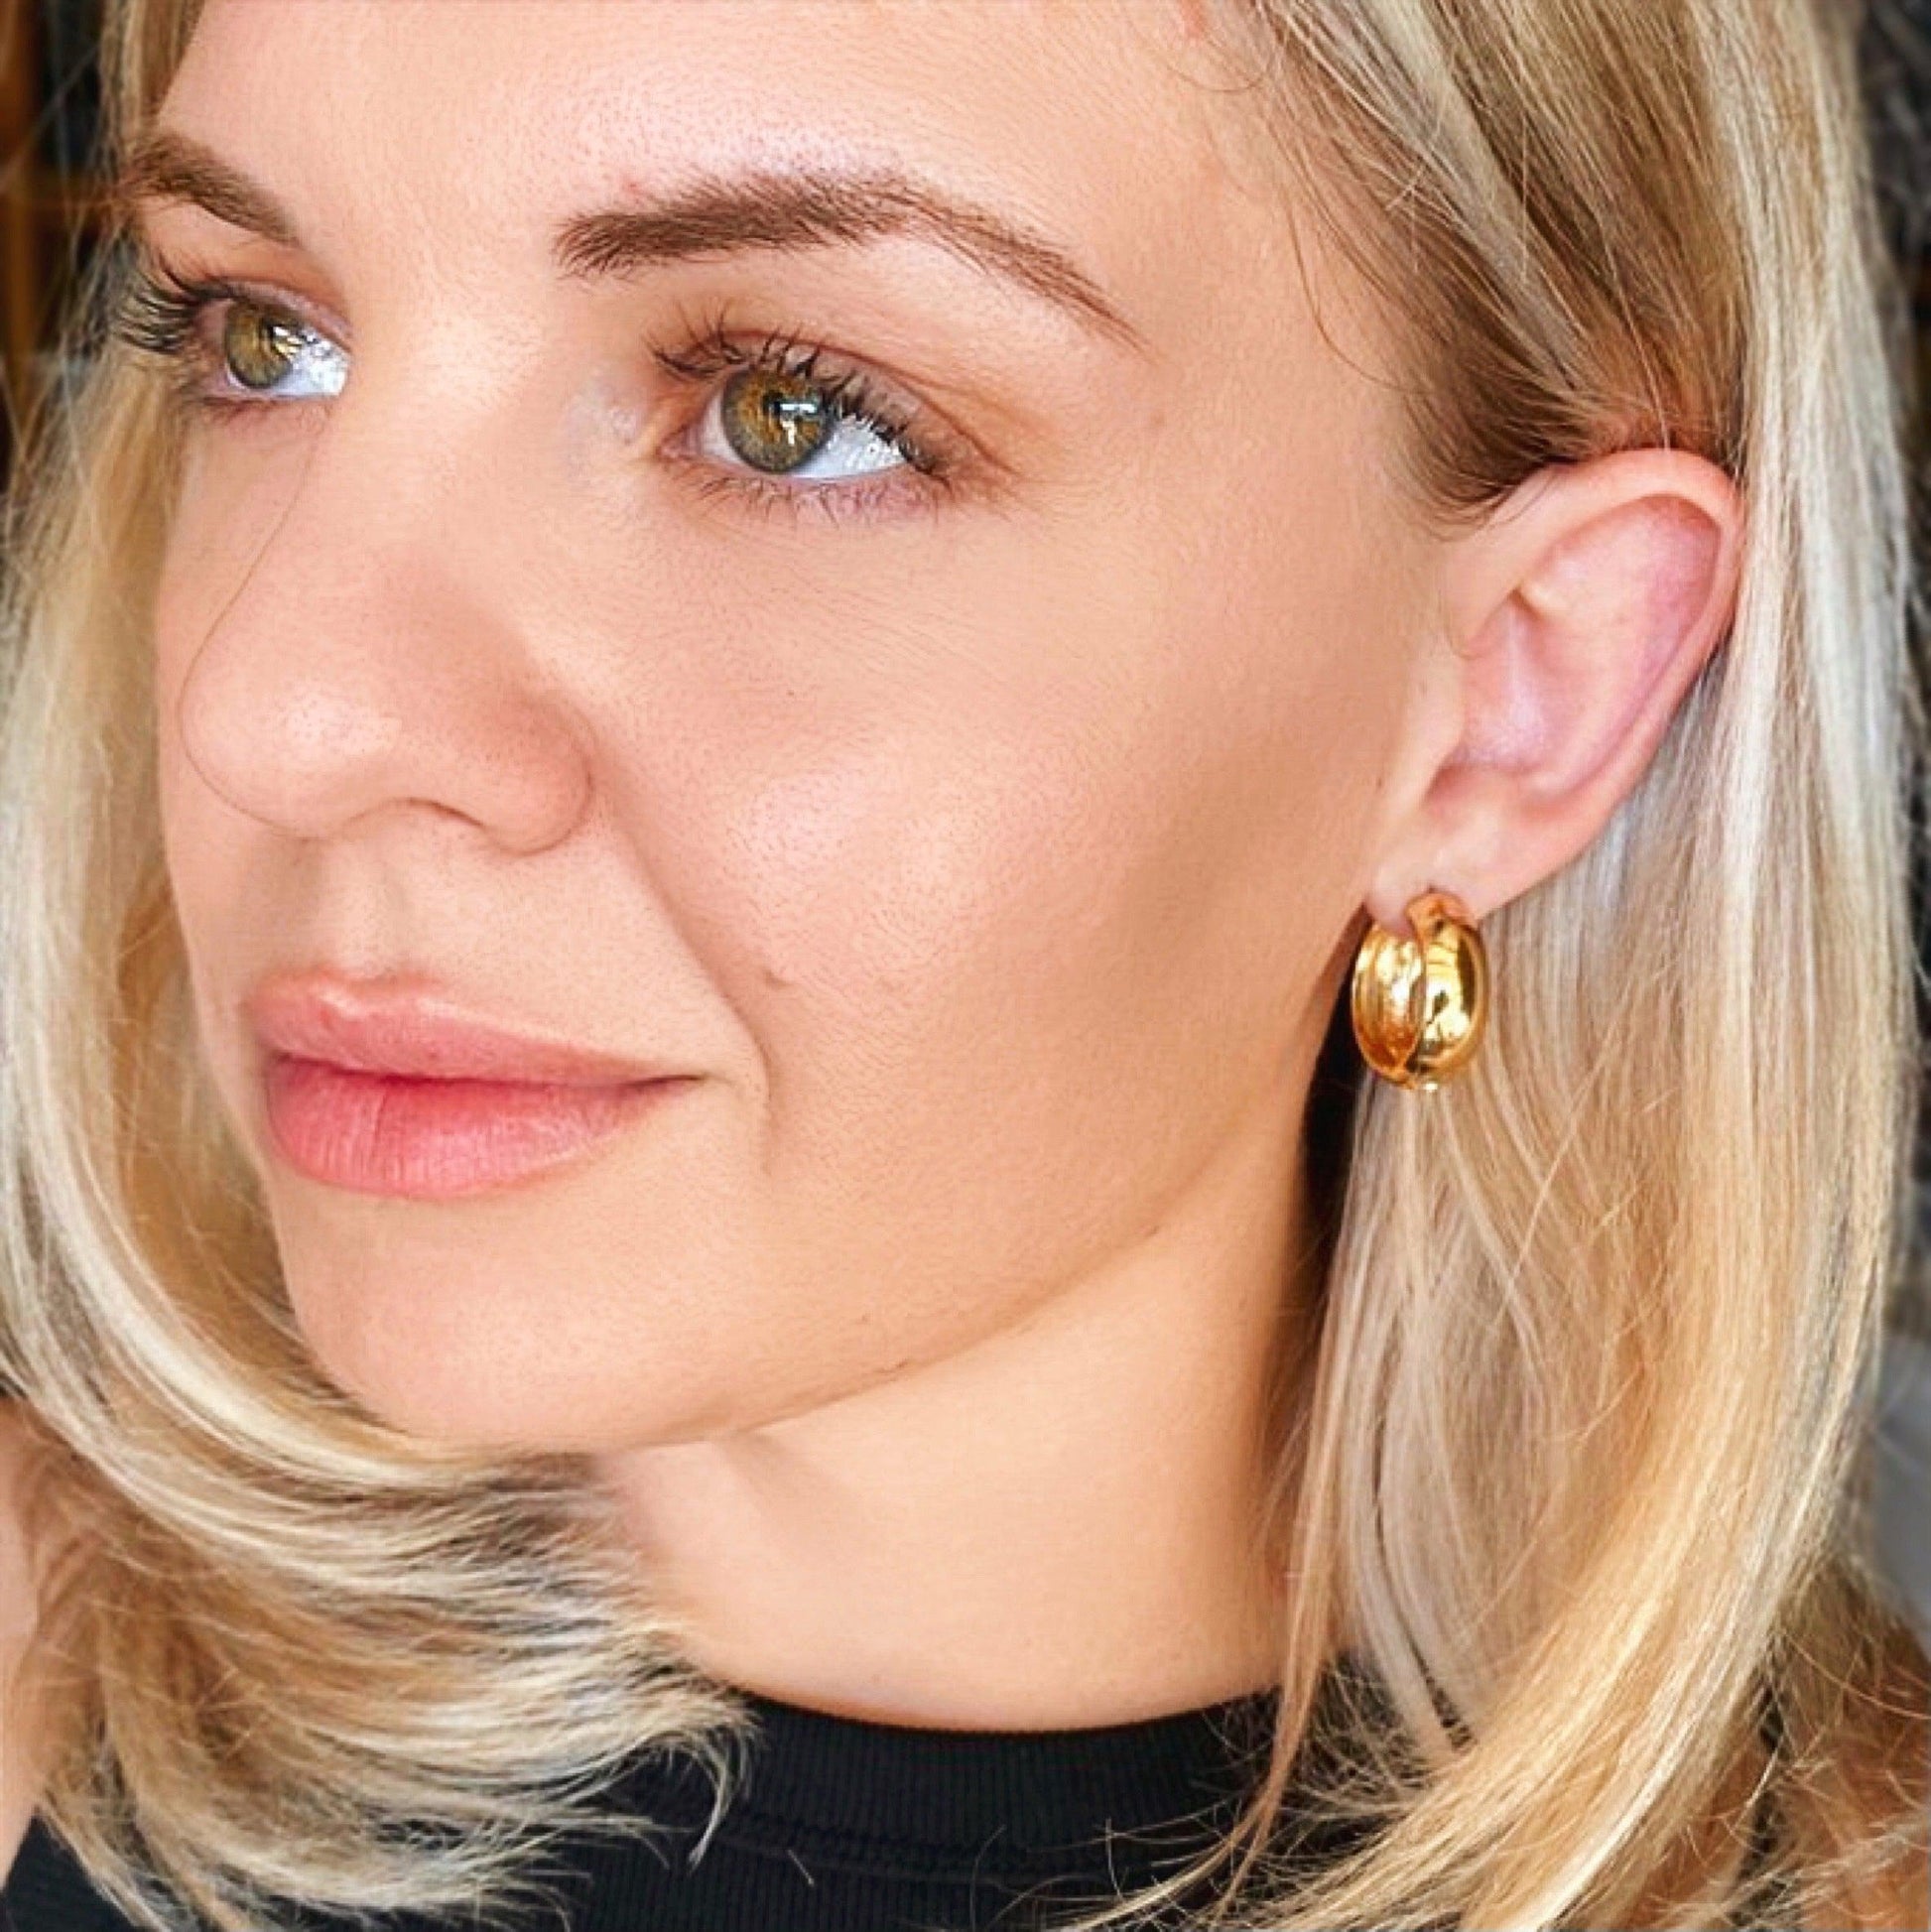 GoldFi Chunky Clicker Hoop Earrings In 18k Gold Filled